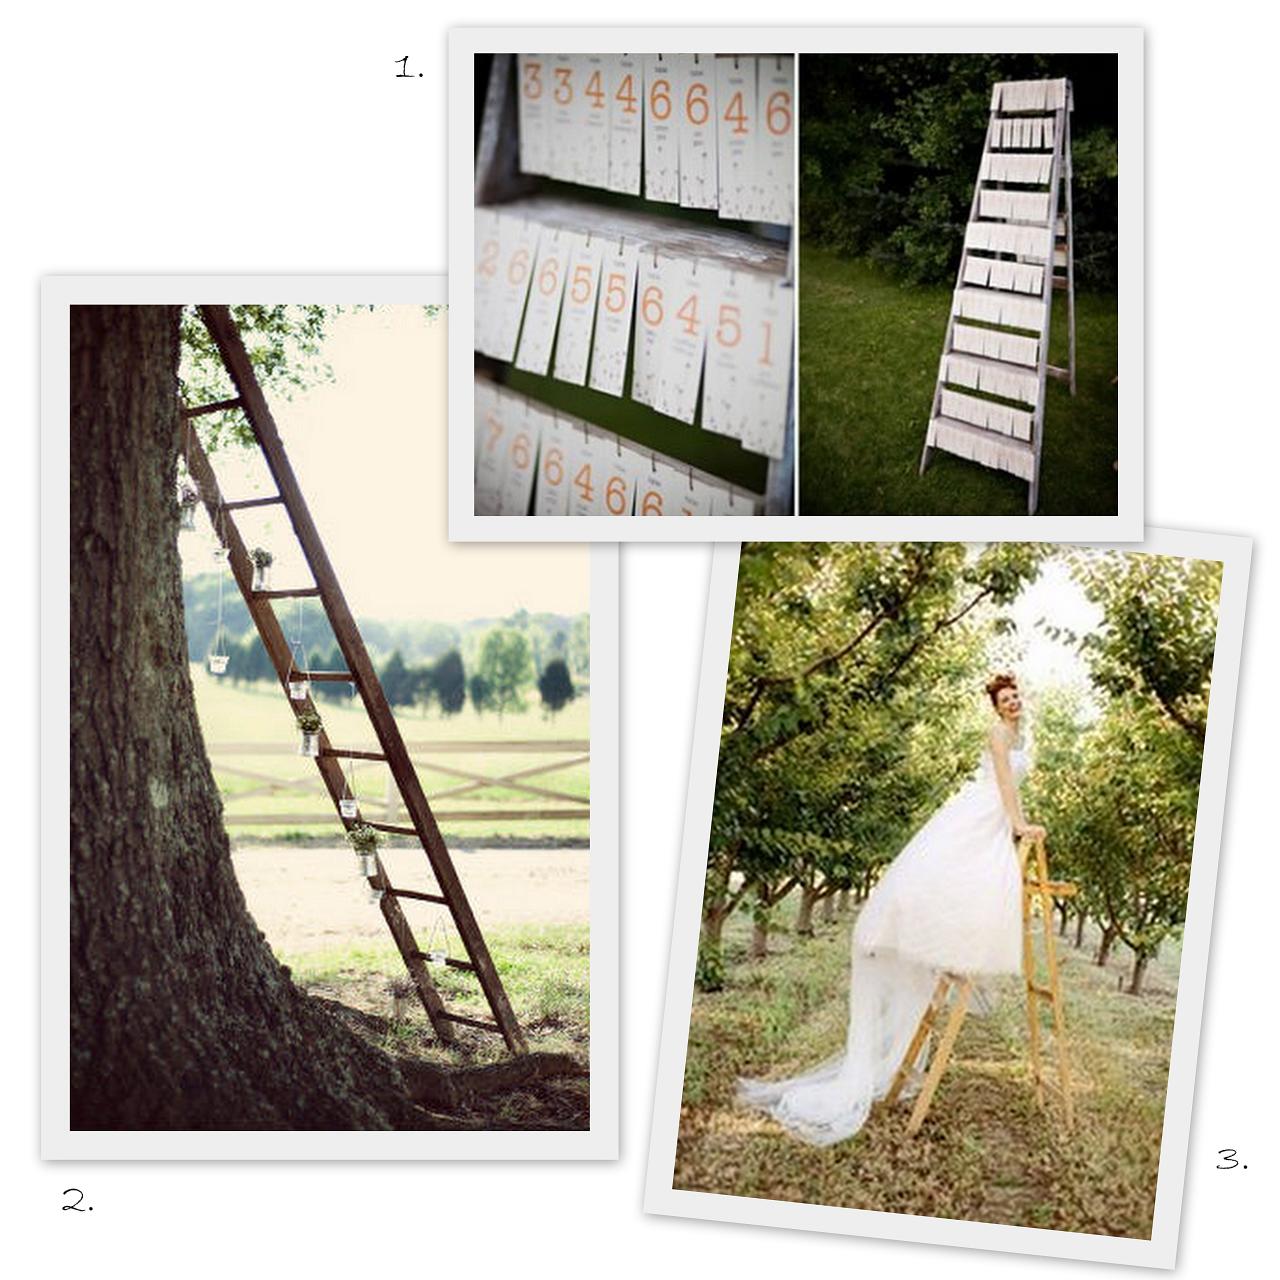 old ladders in weddings?